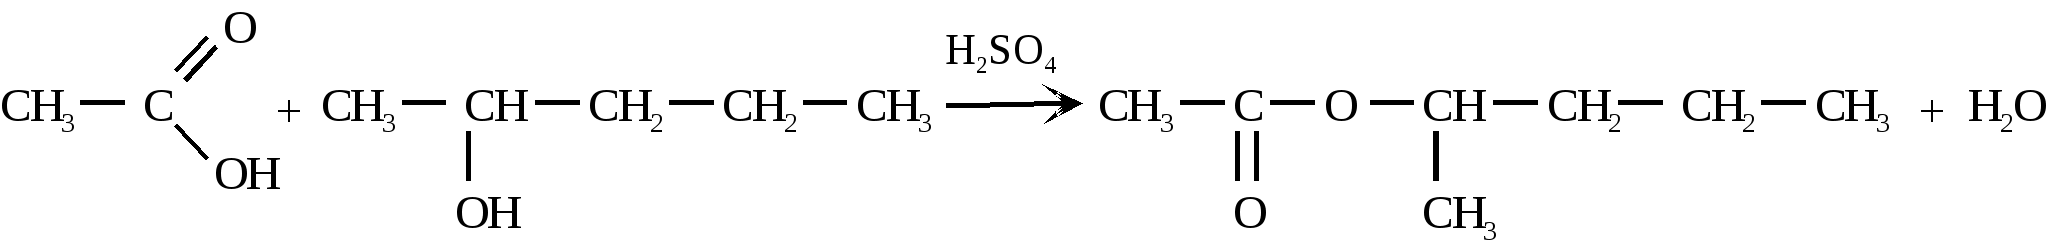 1 Хлорпропан гексан. Хлорирование пропана уравнение реакции. Хлорпропан в гексан. Гексан и хлор.